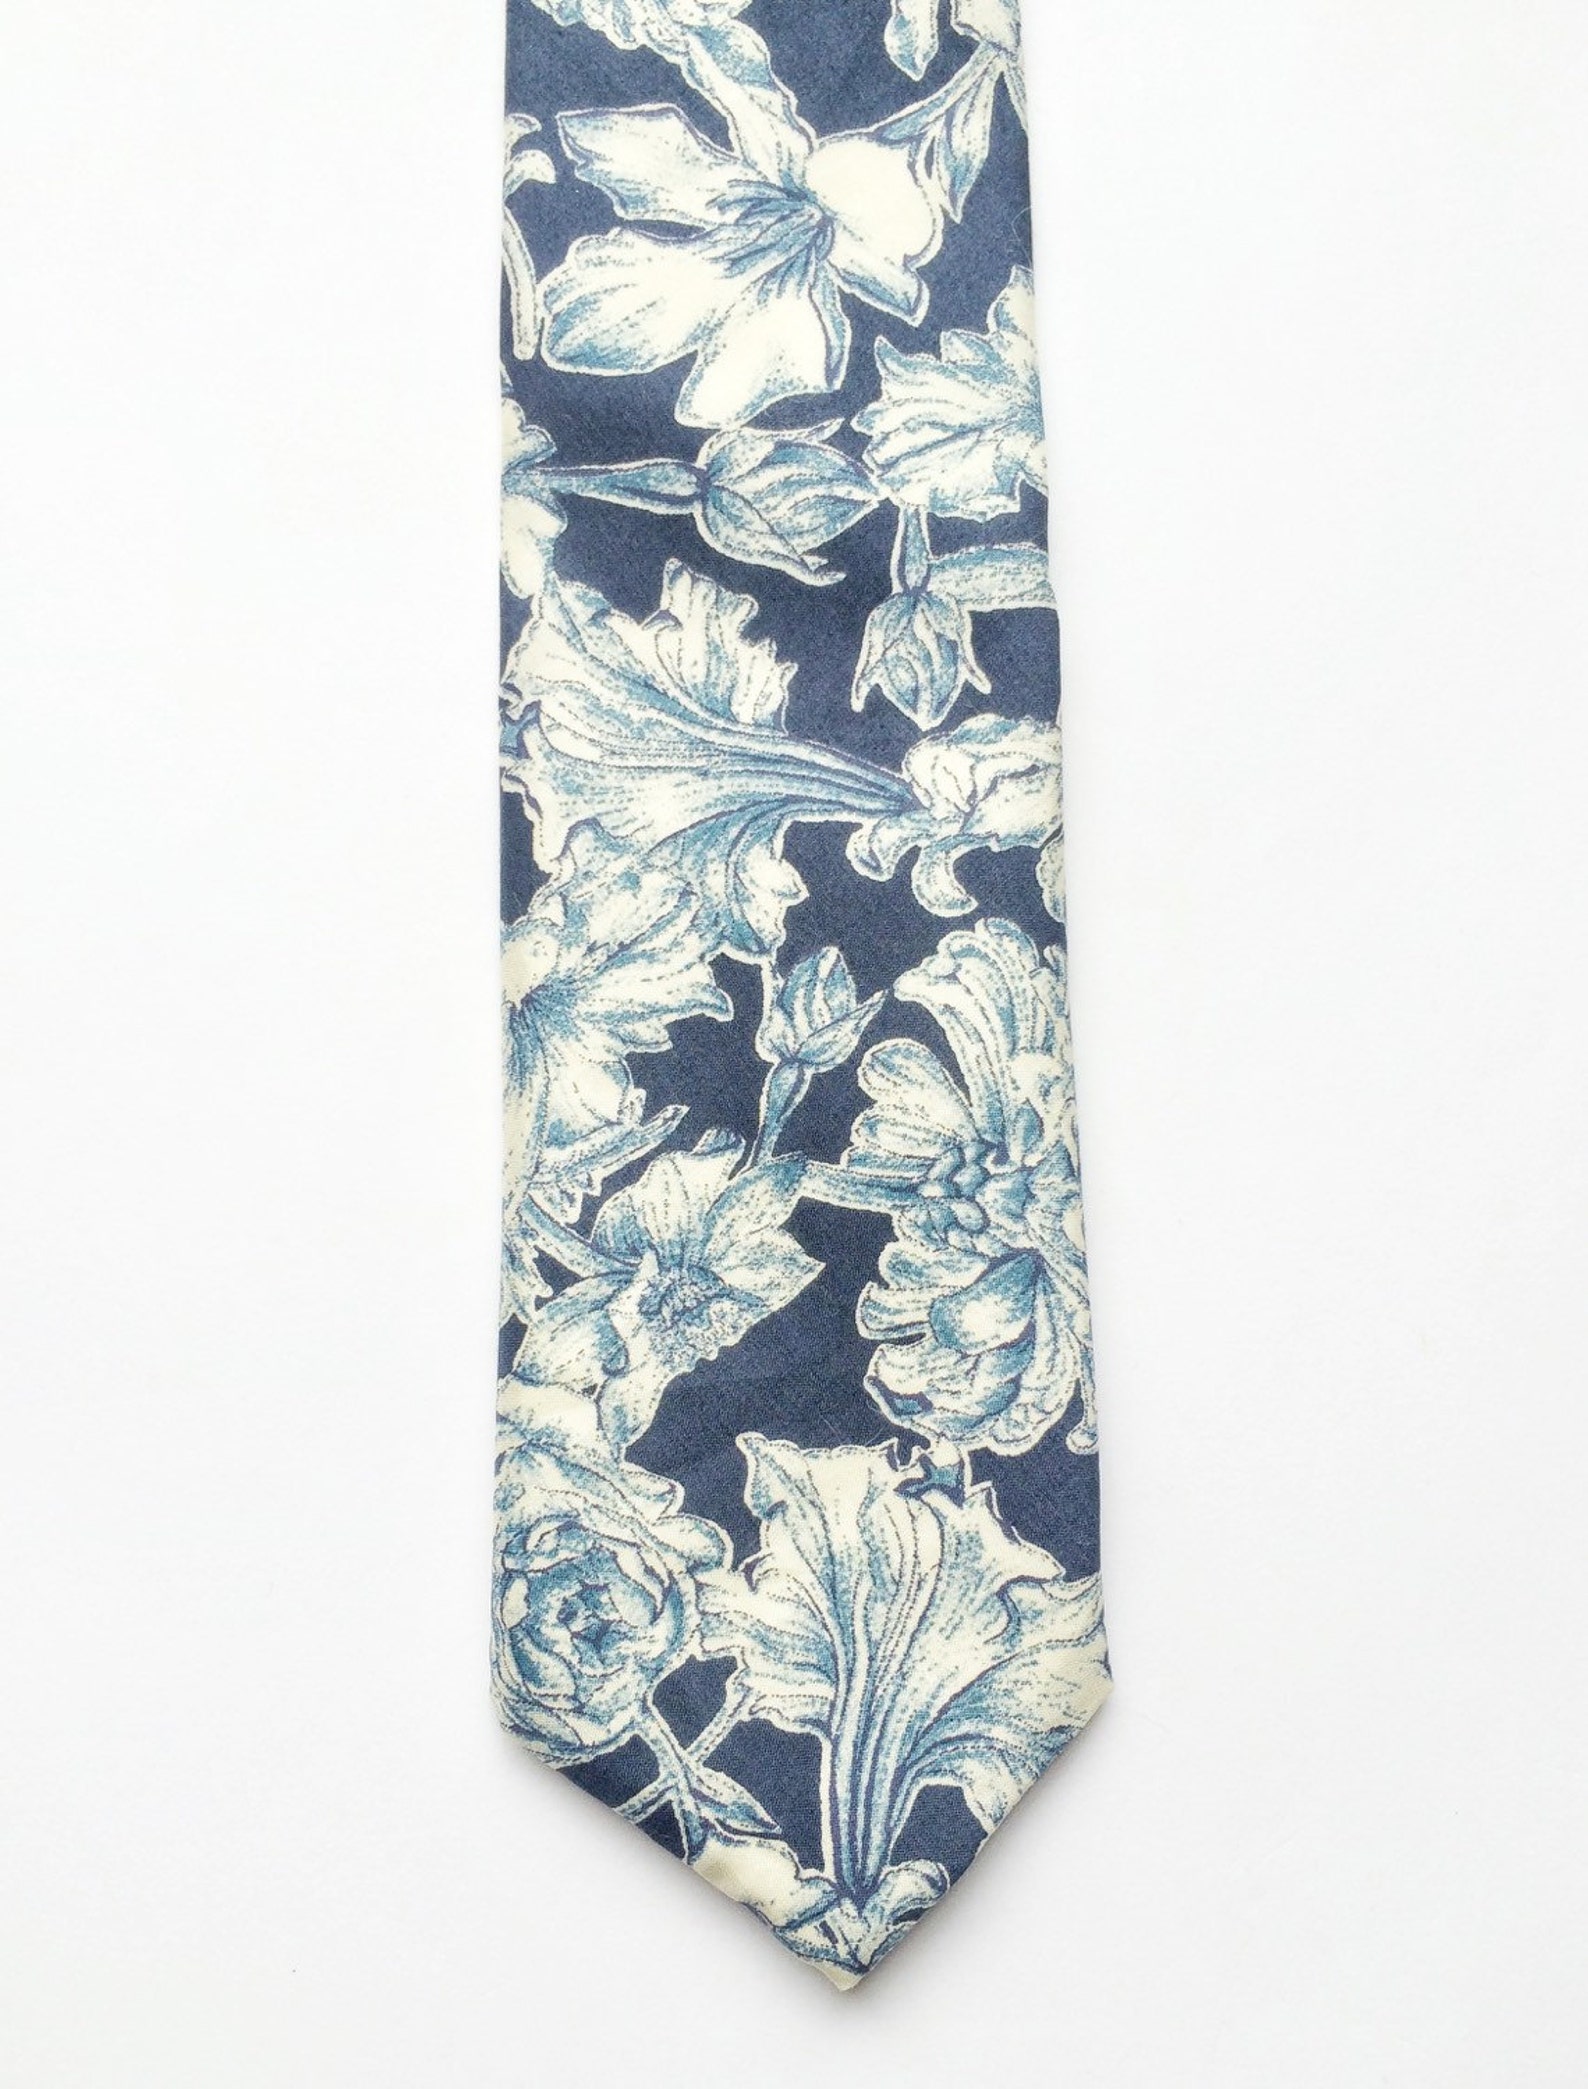 Floral tie navy blue skinny tie Liberty print tie Mens | Etsy